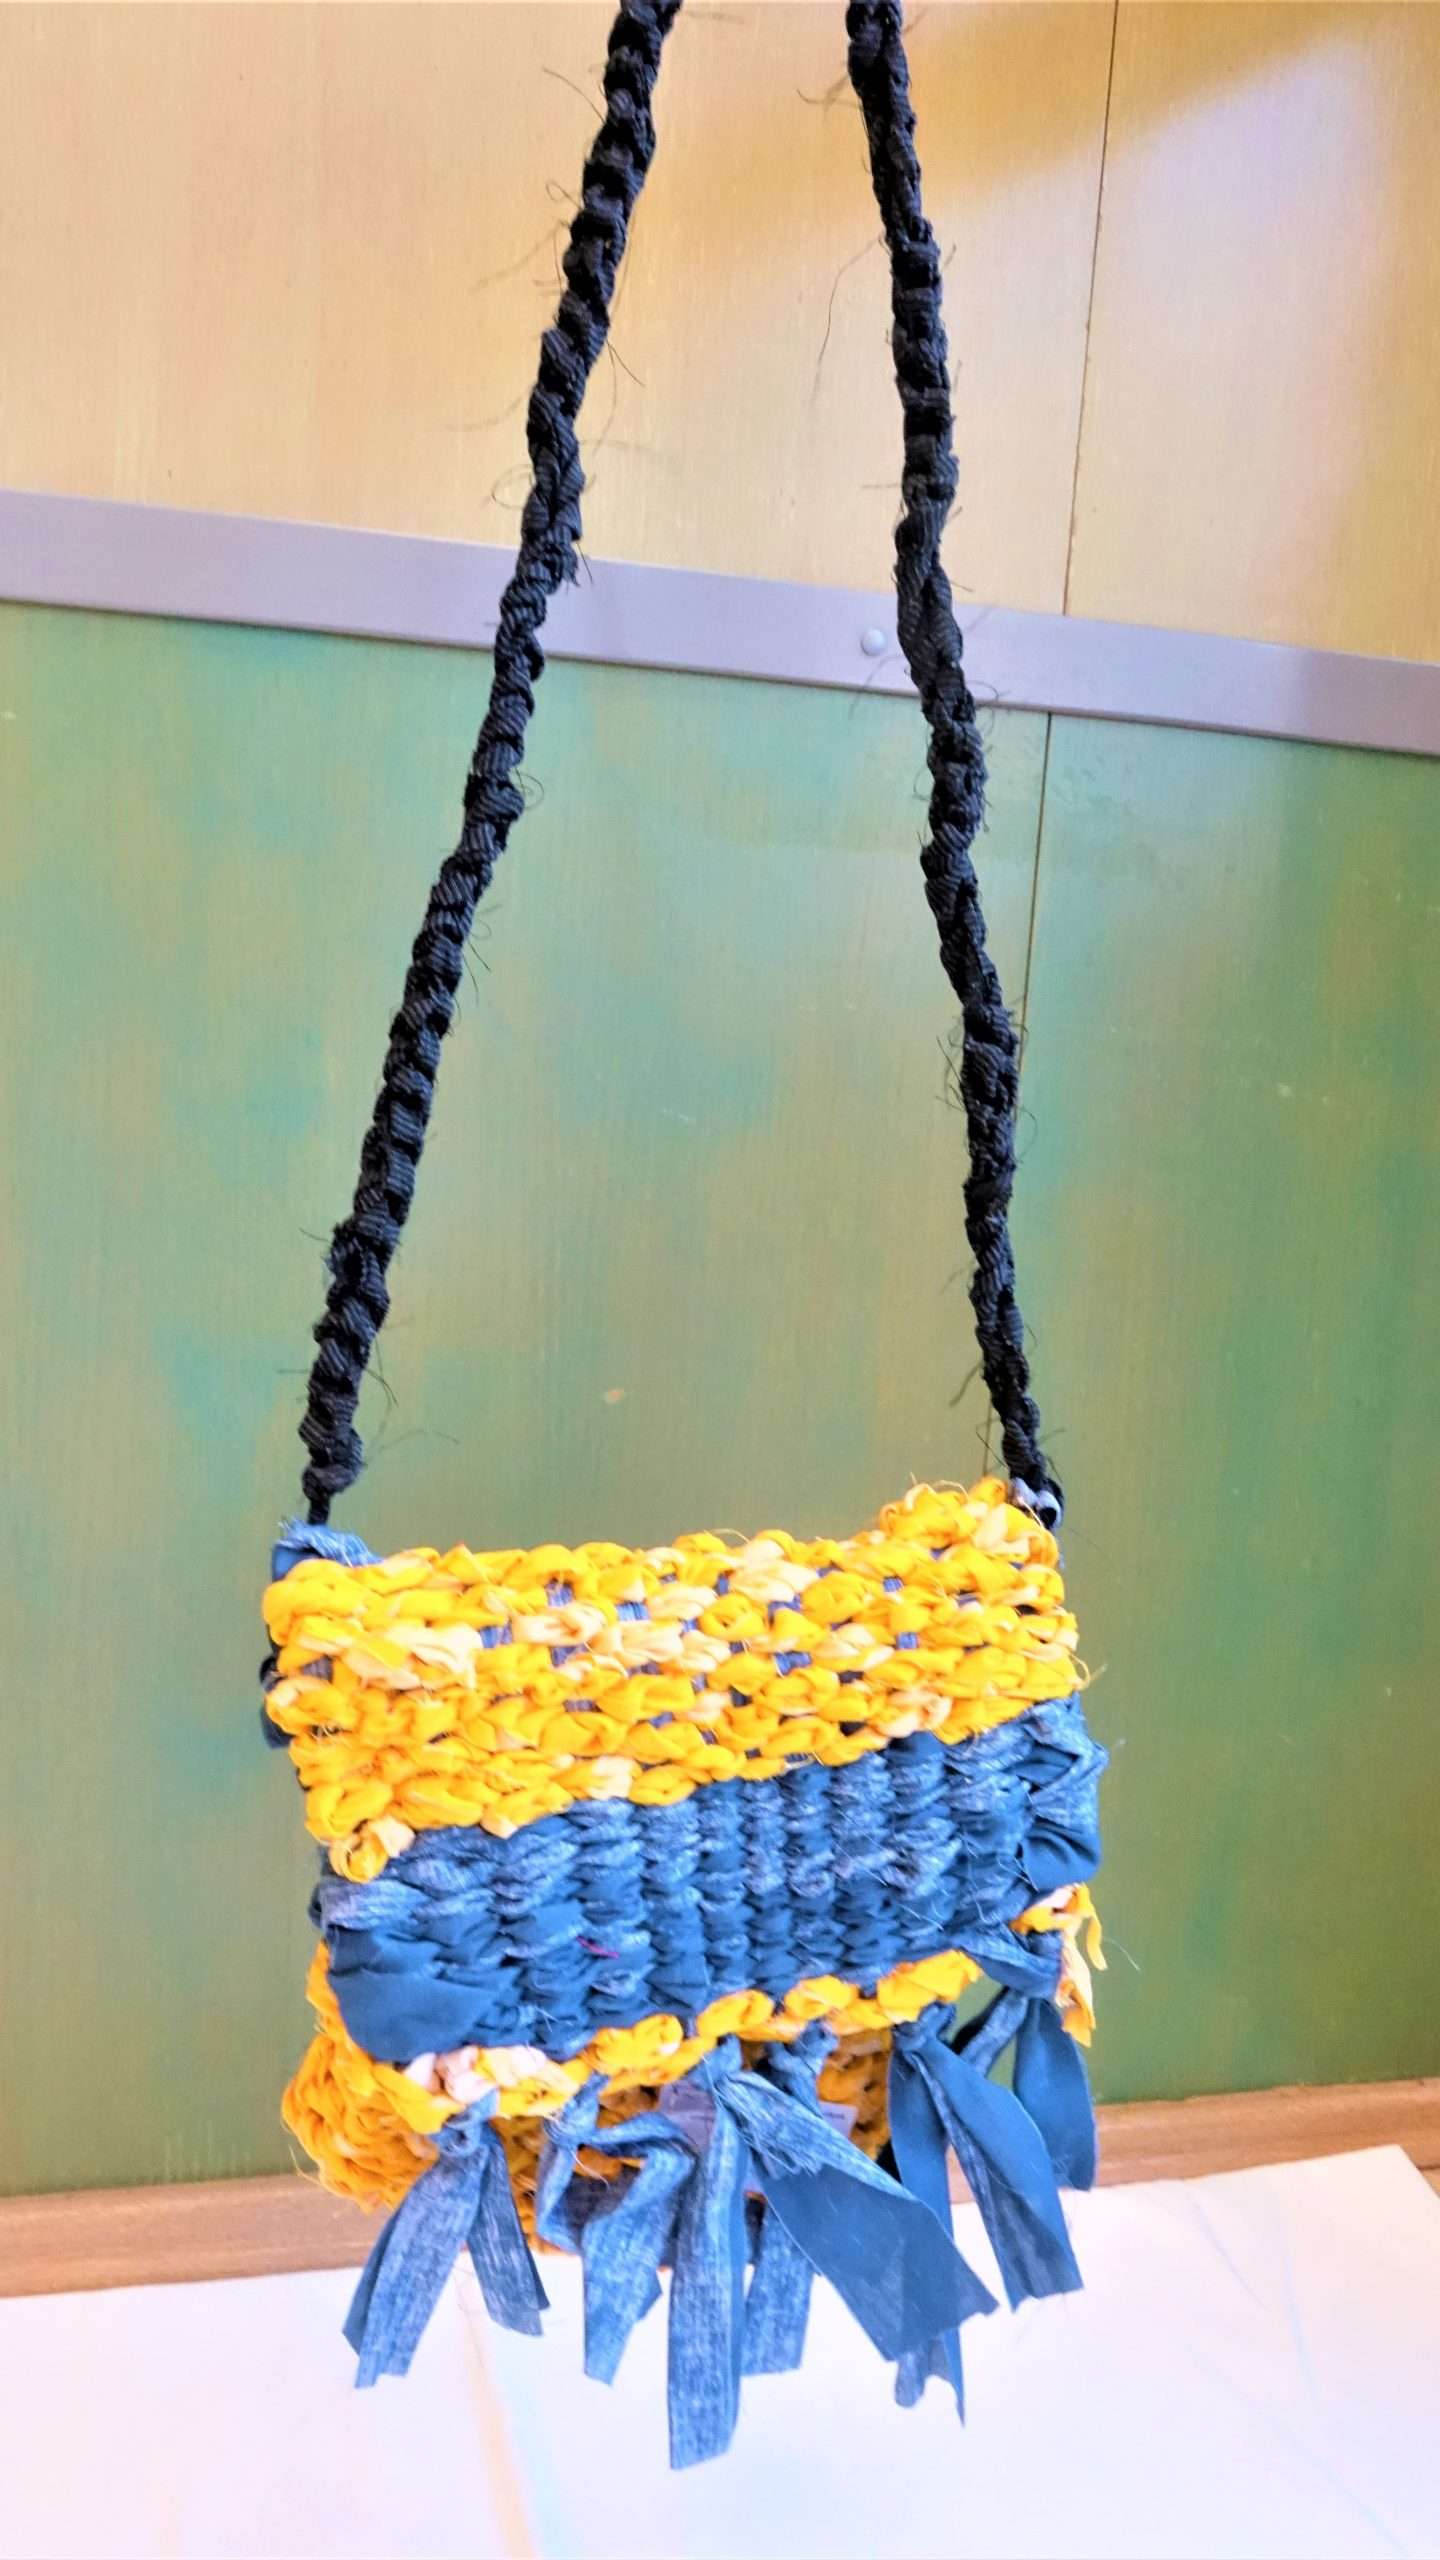 A képen egy saját készítésű szövőkereten készített sárga és kék tarisznya látható, aminek az alapanyaga horgolt textil.